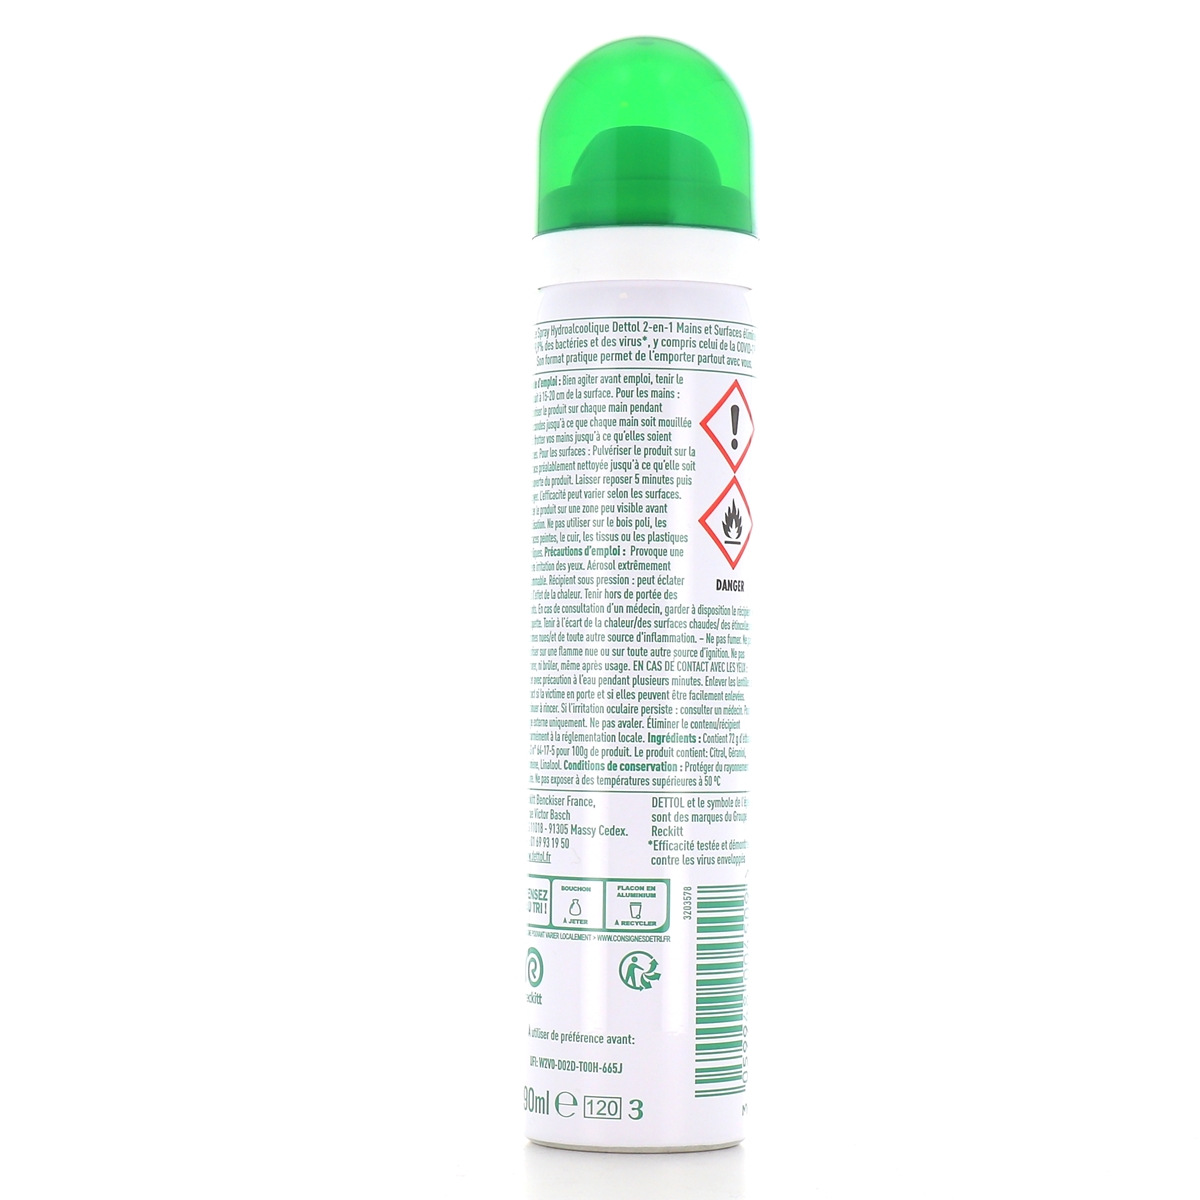 Désinfectant pour les Mains (Spray Liquide) (2.99$ CAD$) – La